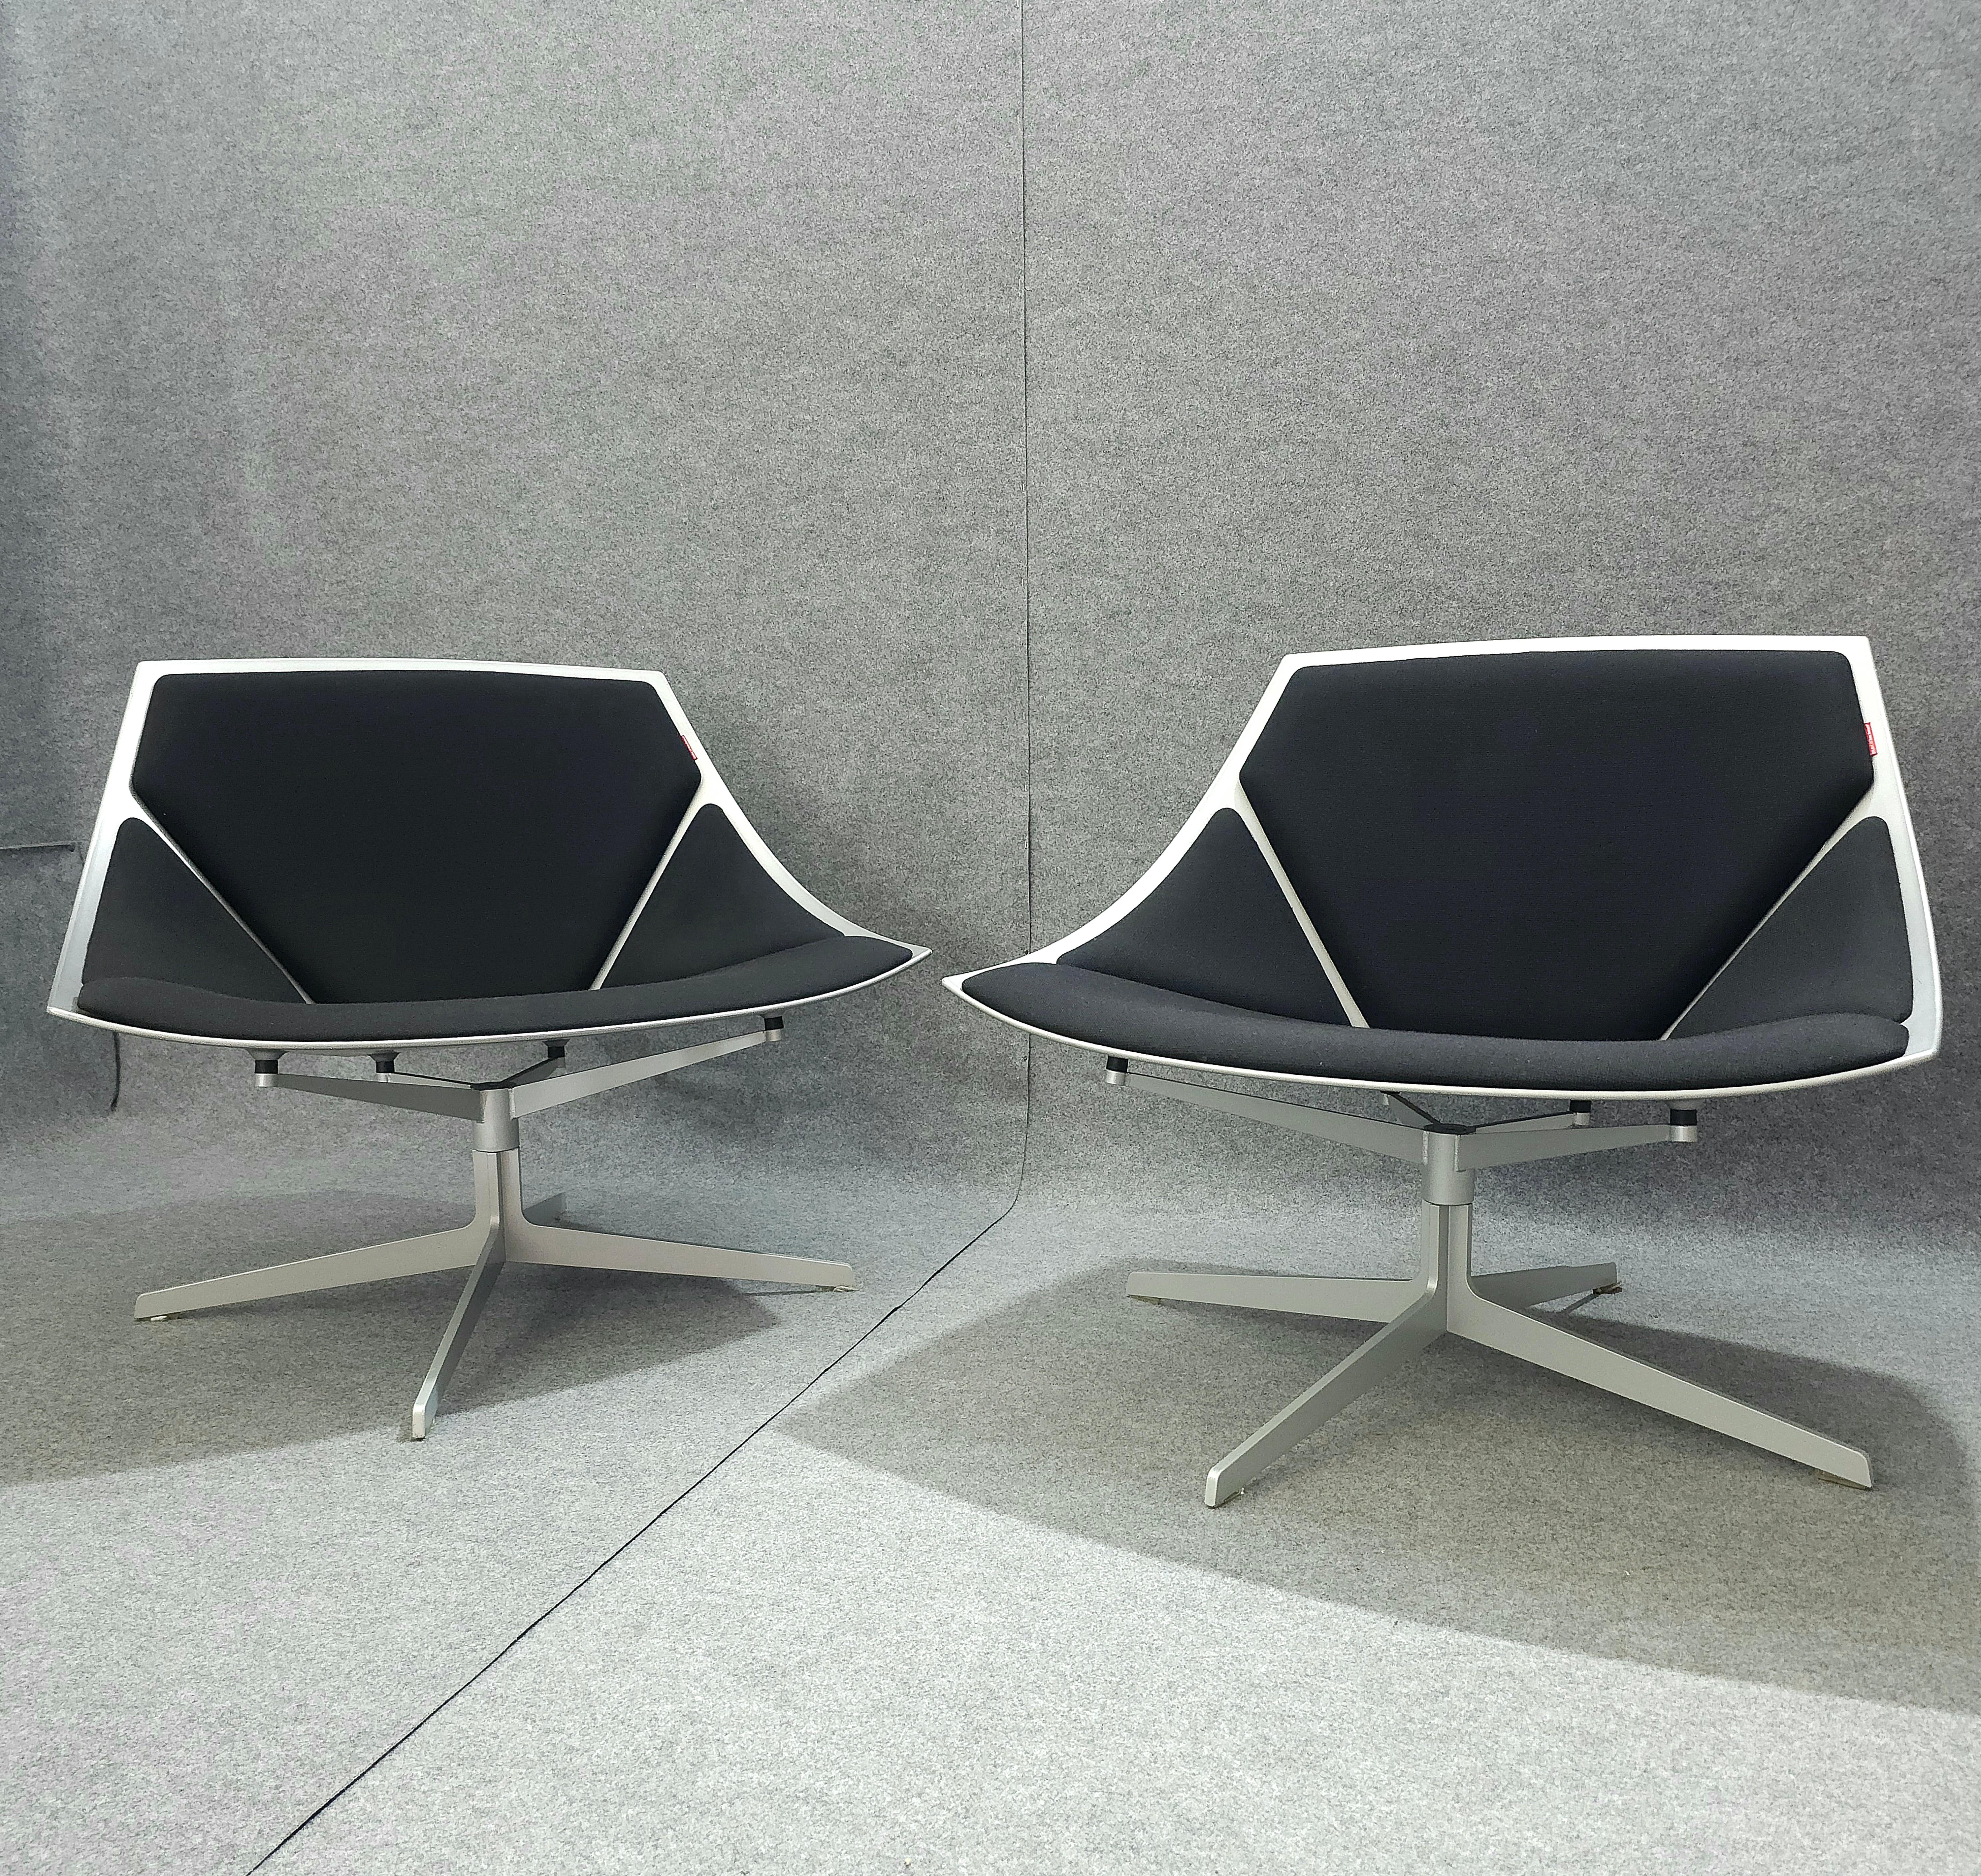 Satz von 2 anatomisch geformten Drehsesseln/-stühlen, hergestellt in Dänemark in den 2000er Jahren. Jeder Sessel/Stuhl besteht aus einer Kunststoffstruktur, einem Vierfußgestell aus Stahl, einer geschwungenen Sitzfläche und einer Rückenlehne mit